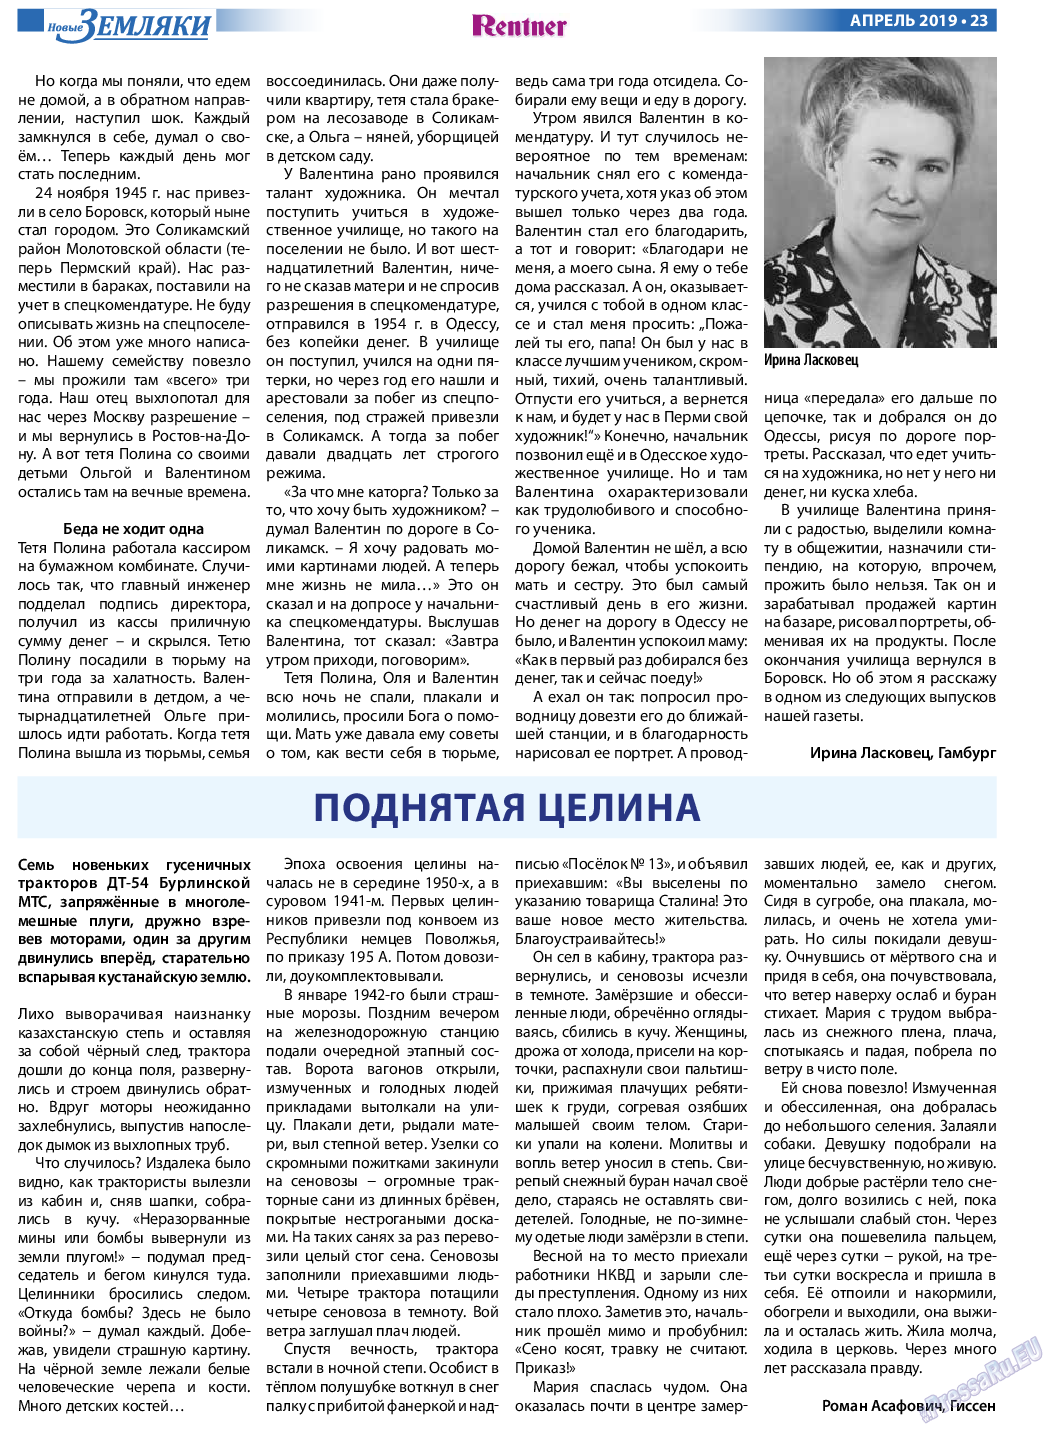 Новые Земляки, газета. 2019 №4 стр.23